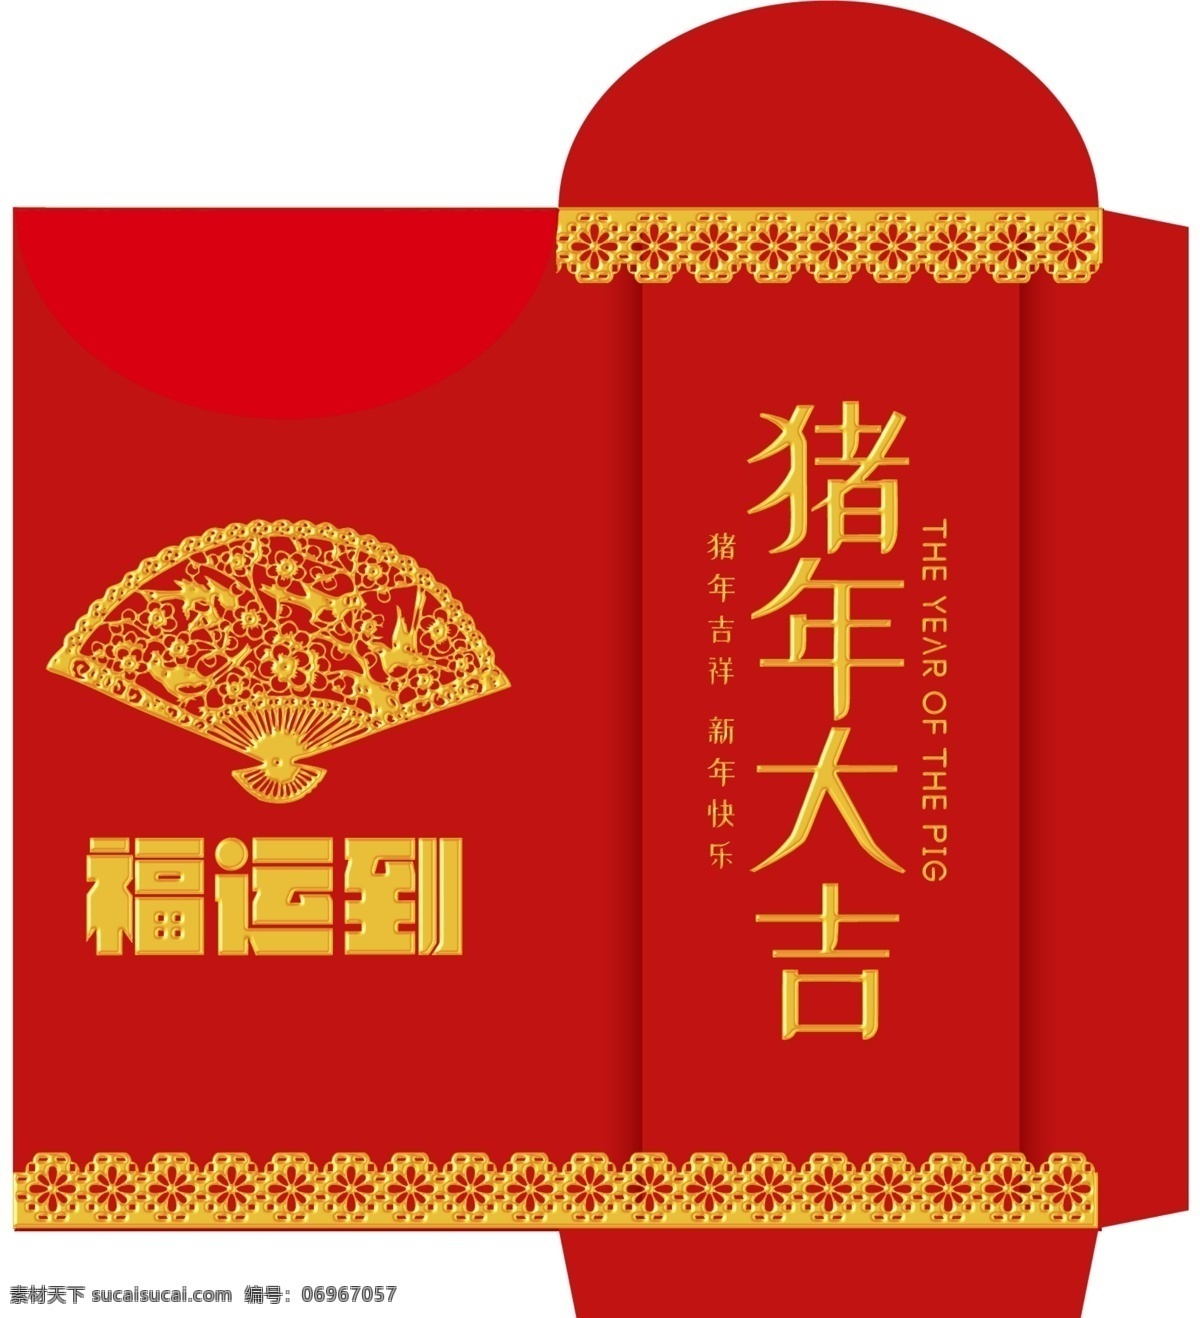 2018 猪年 红包 免费素材 平面素材 psd素材 平面模板 红包模板 红包设计